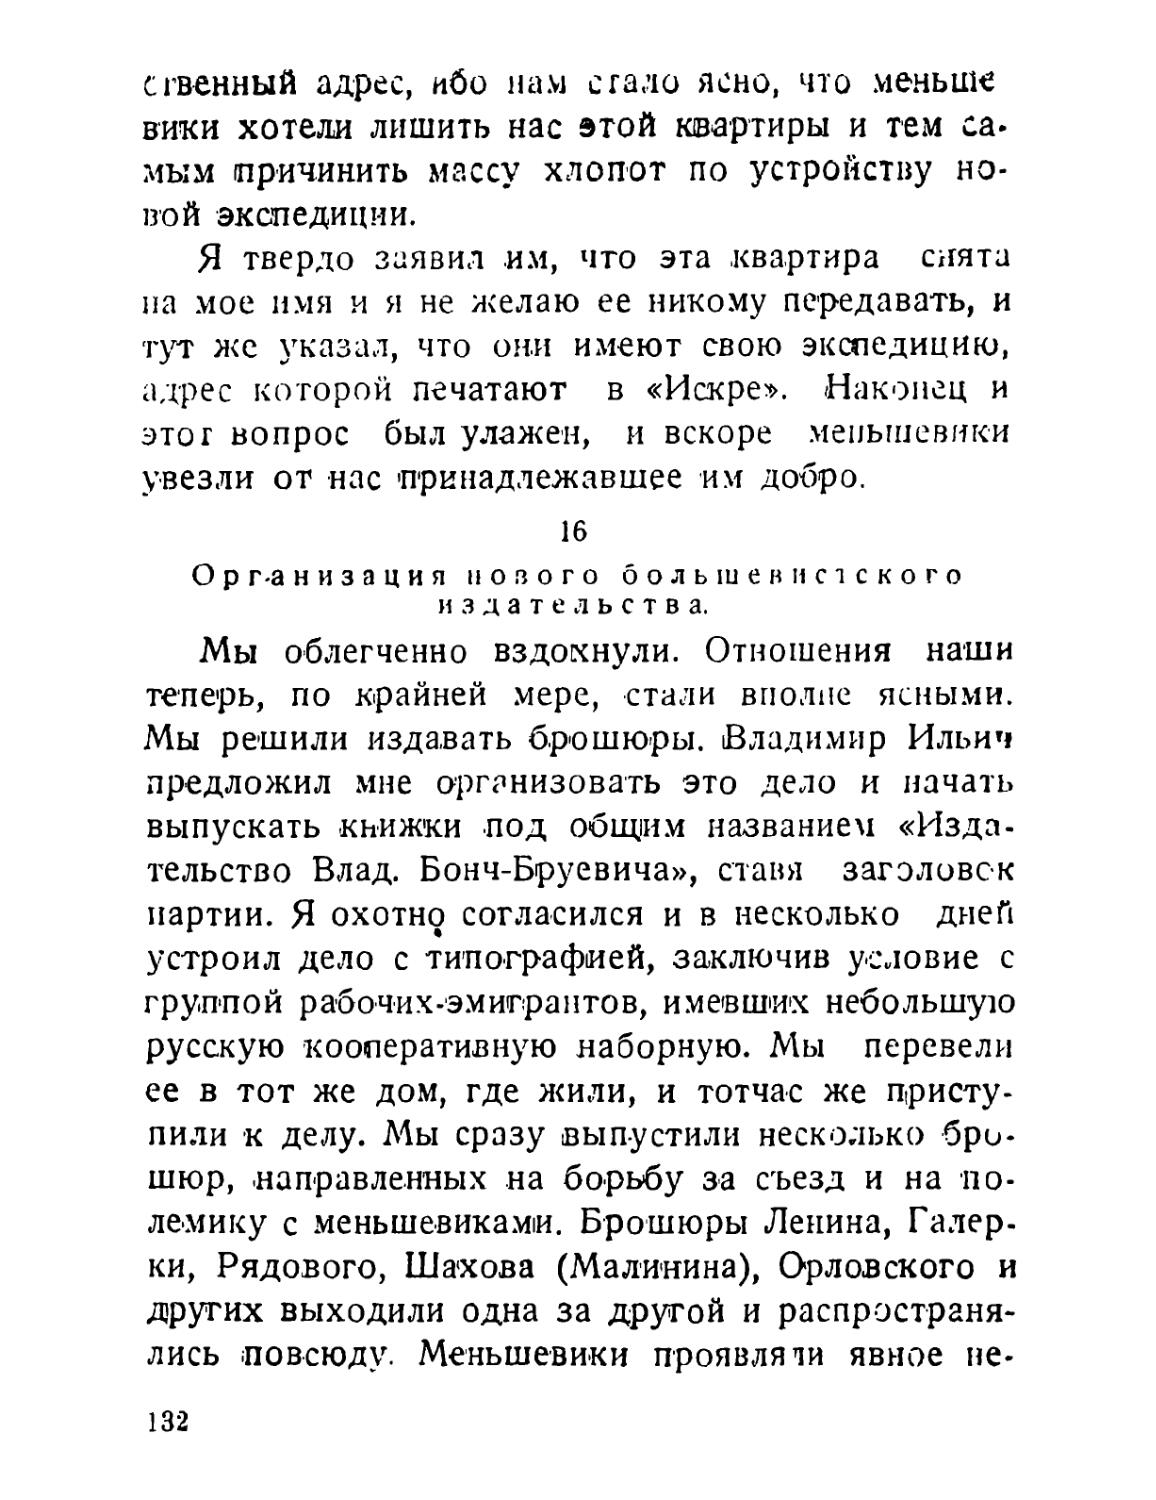 16. Организация нового большевистского издательства